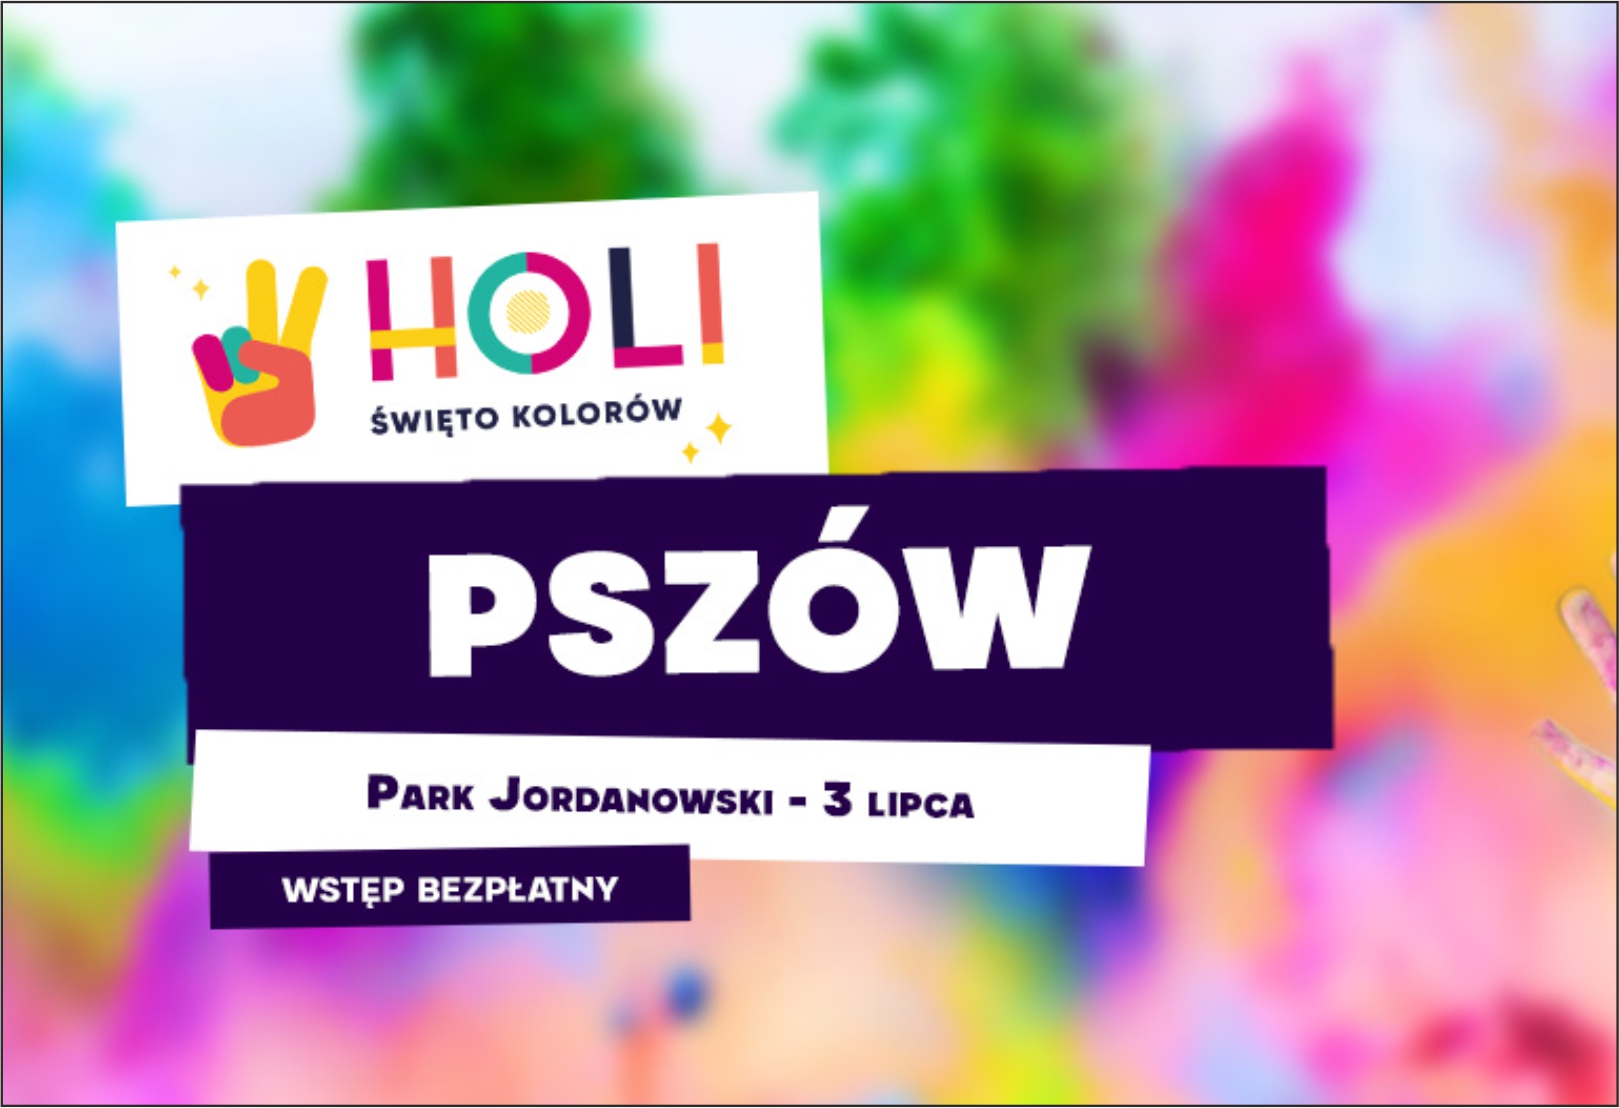 Holi Festiwal czyli święto kolorów w Pszowie.